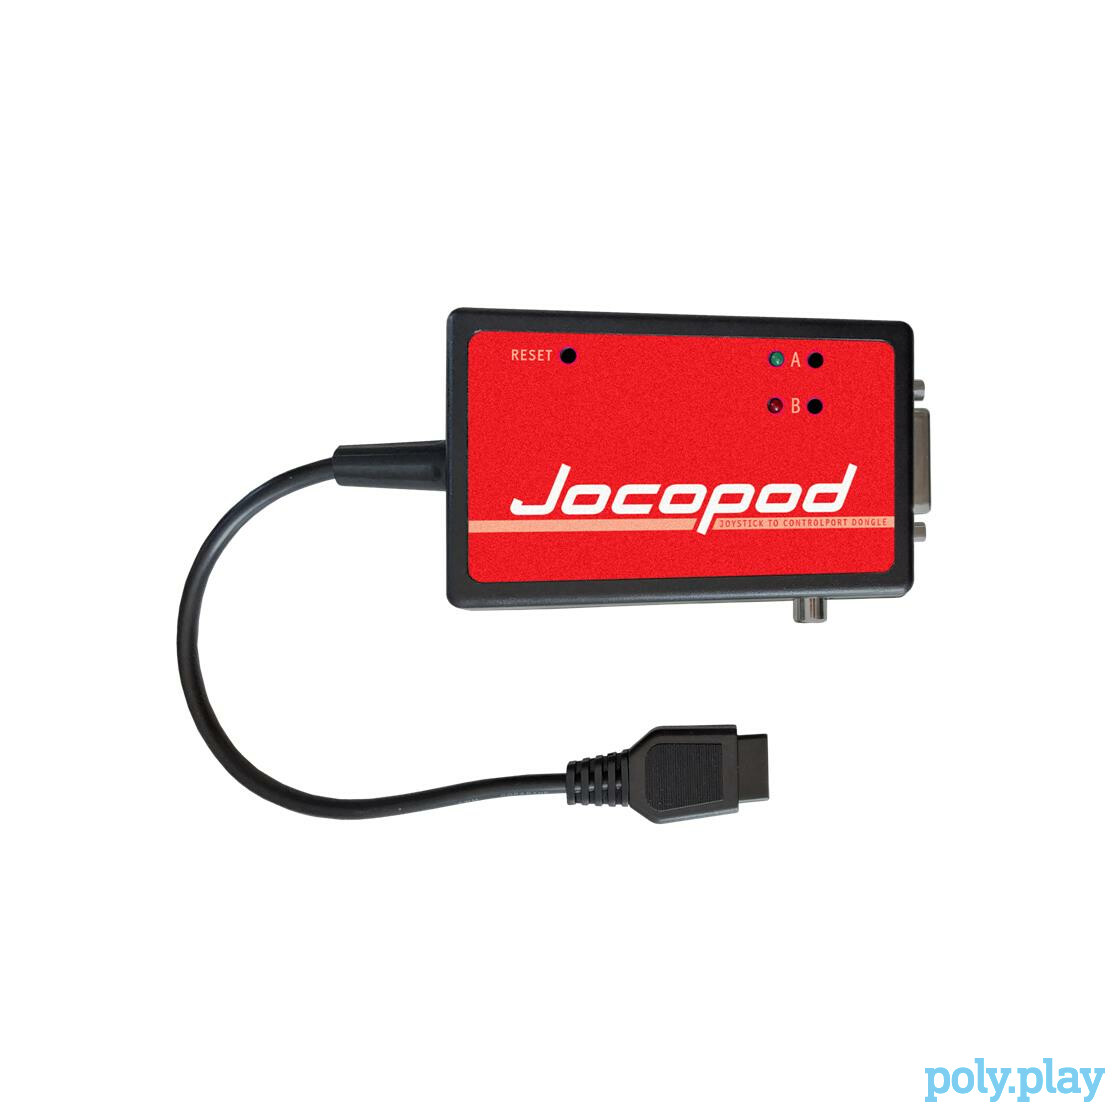 Jocopod (Commodore 64)